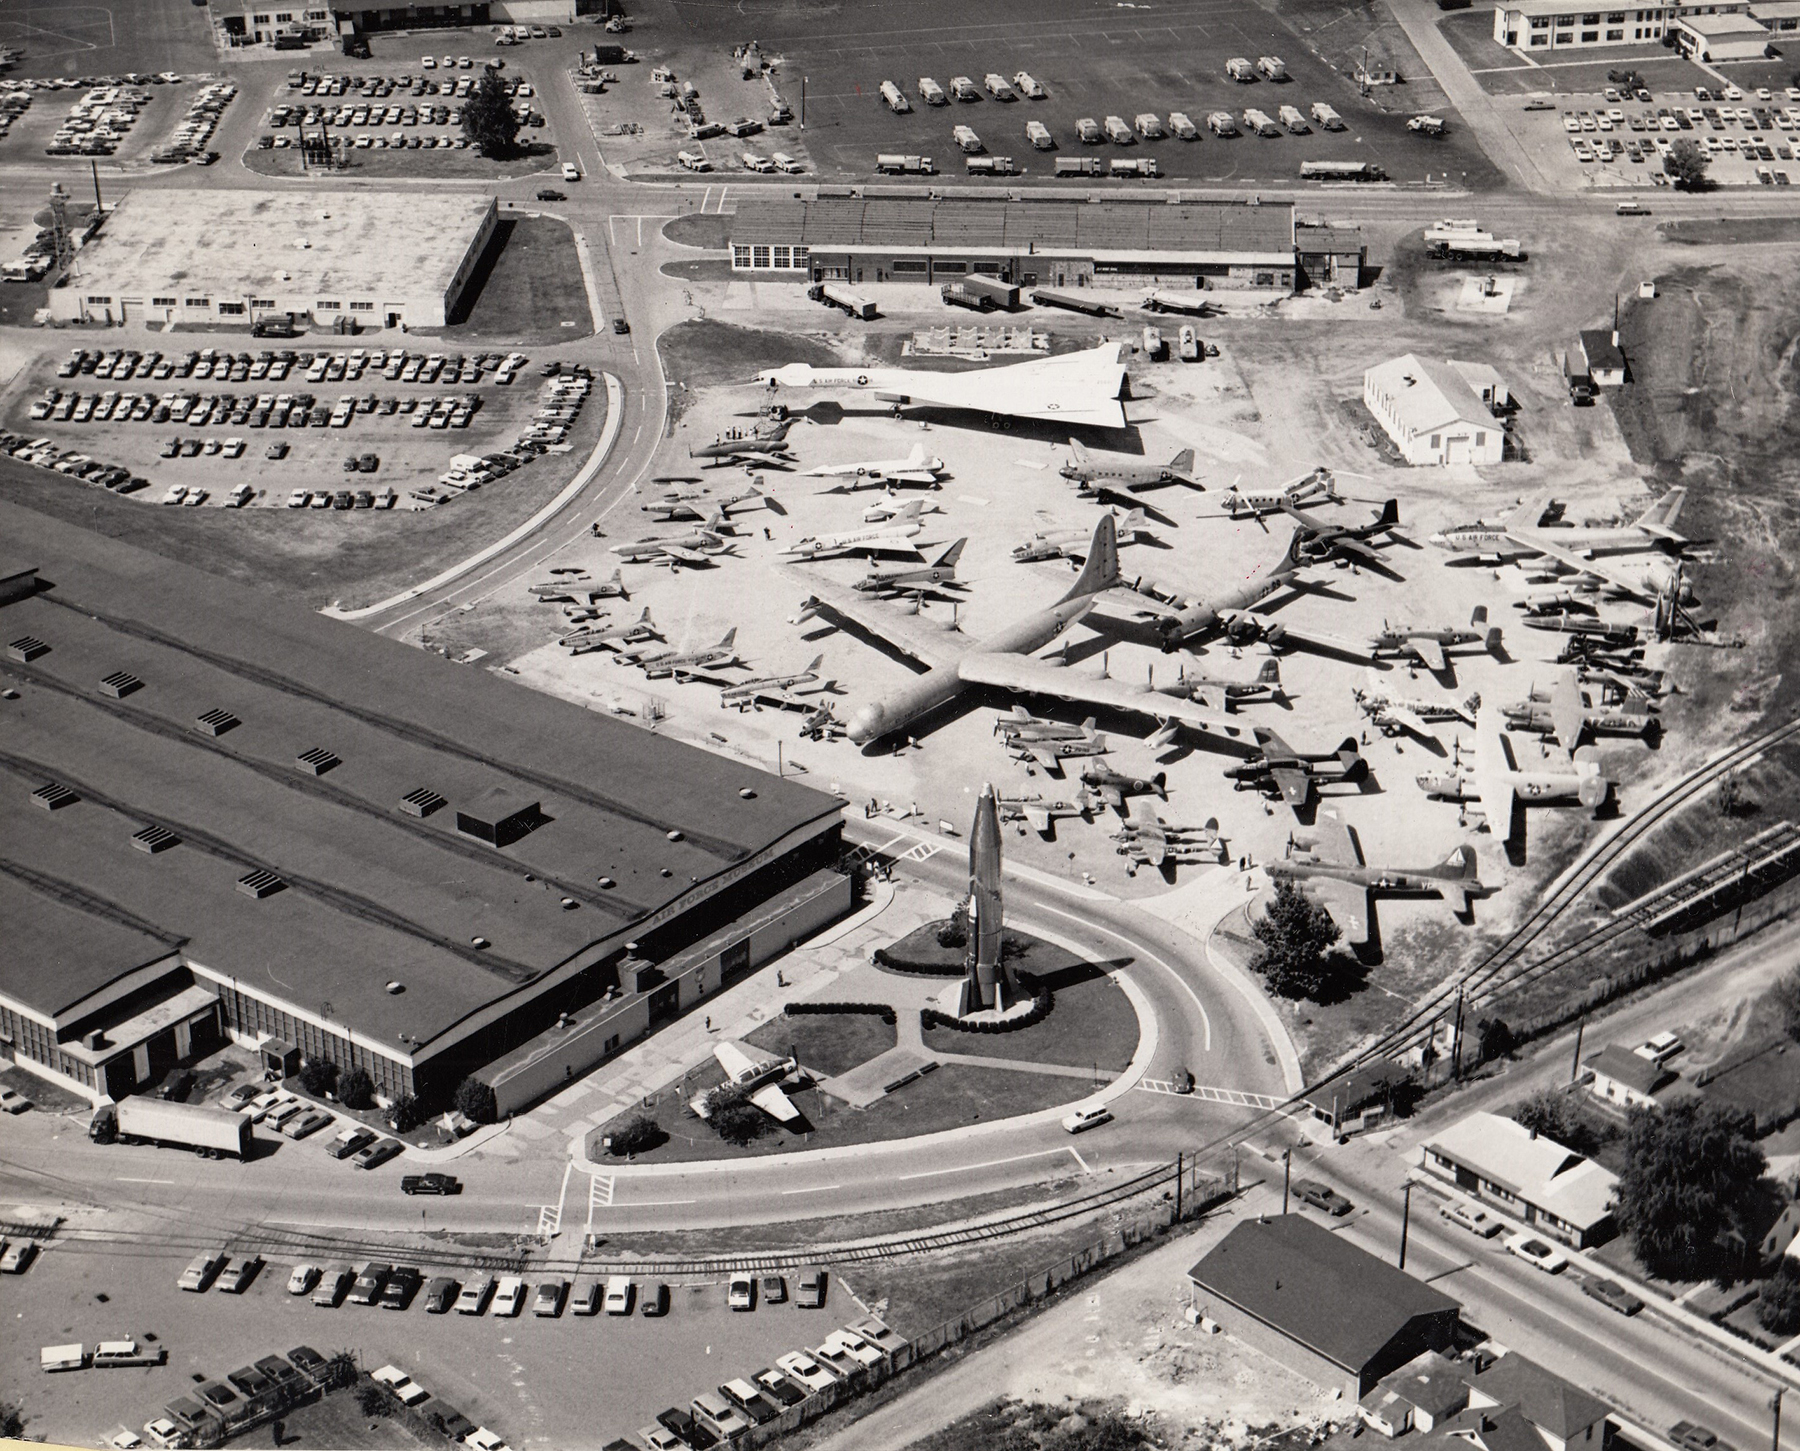 June 1970 aerial view